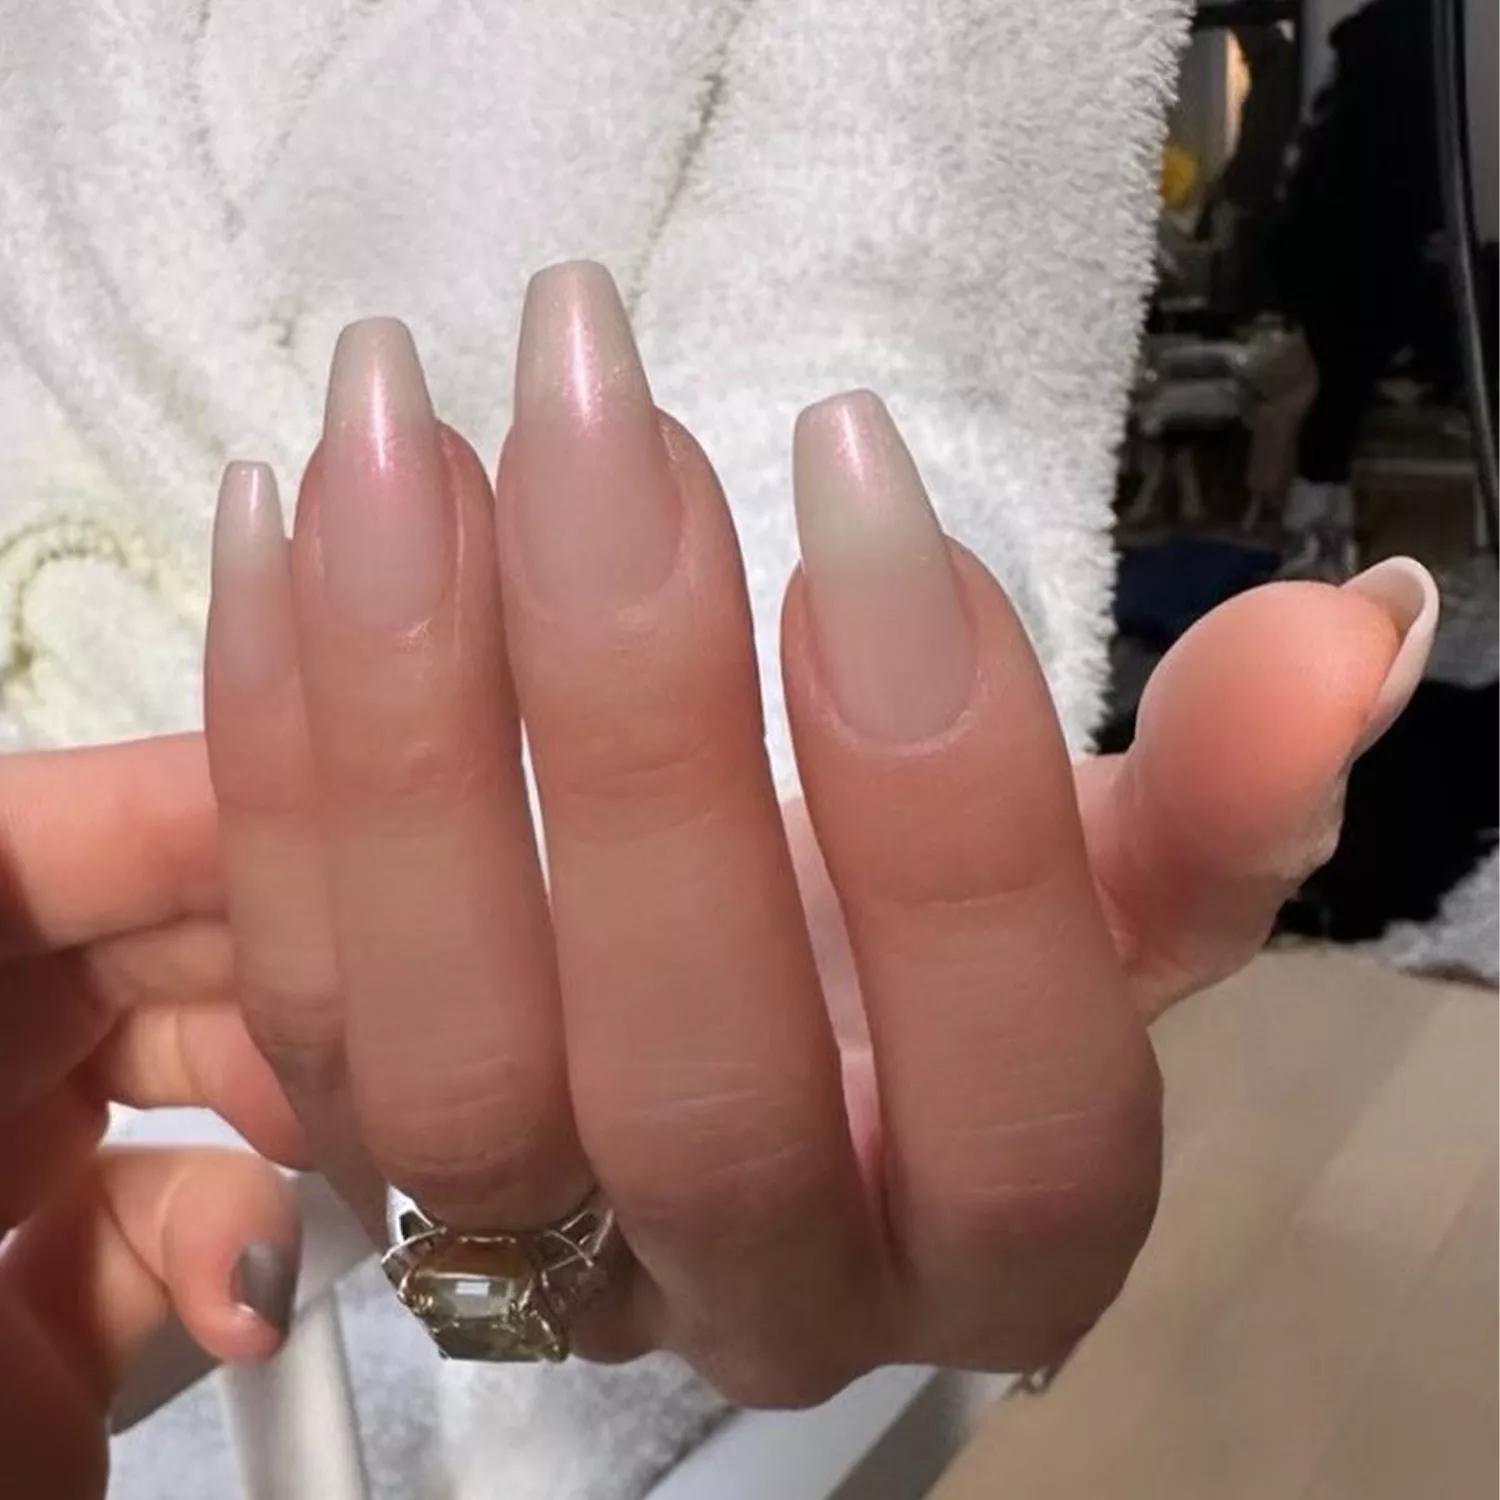 Jennifer Lopez's opal French manicure